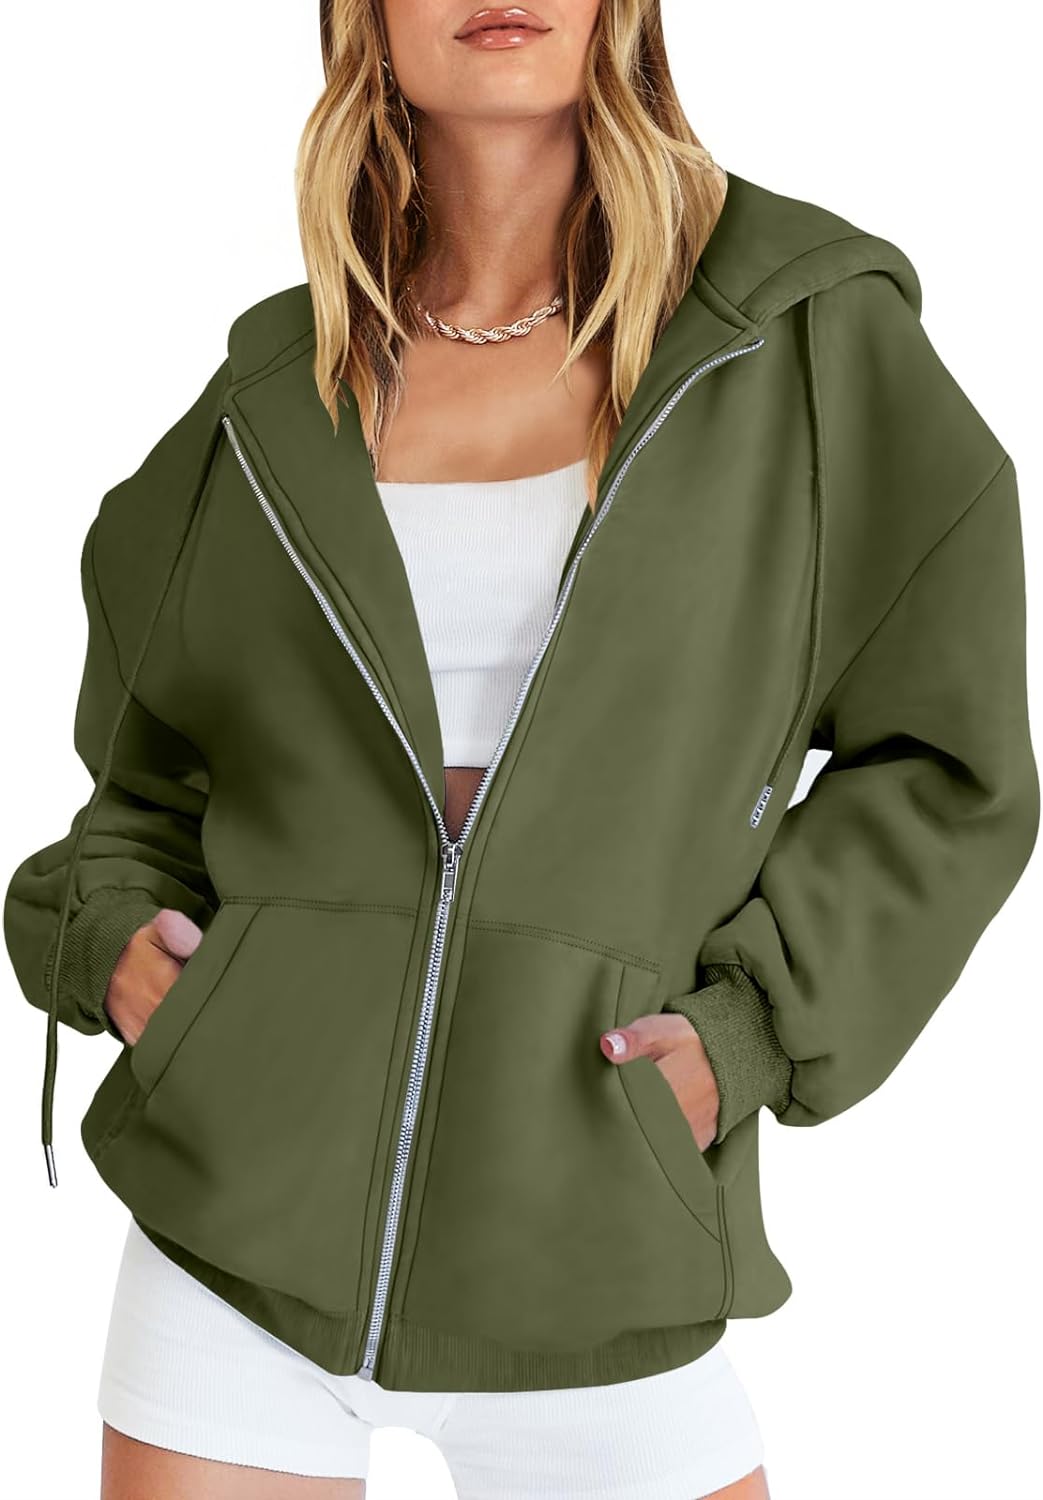 Caracilia Women's Zip Up Hoodies Teen Girls Oversized Sweatshirt Y2K  Clothing Cu